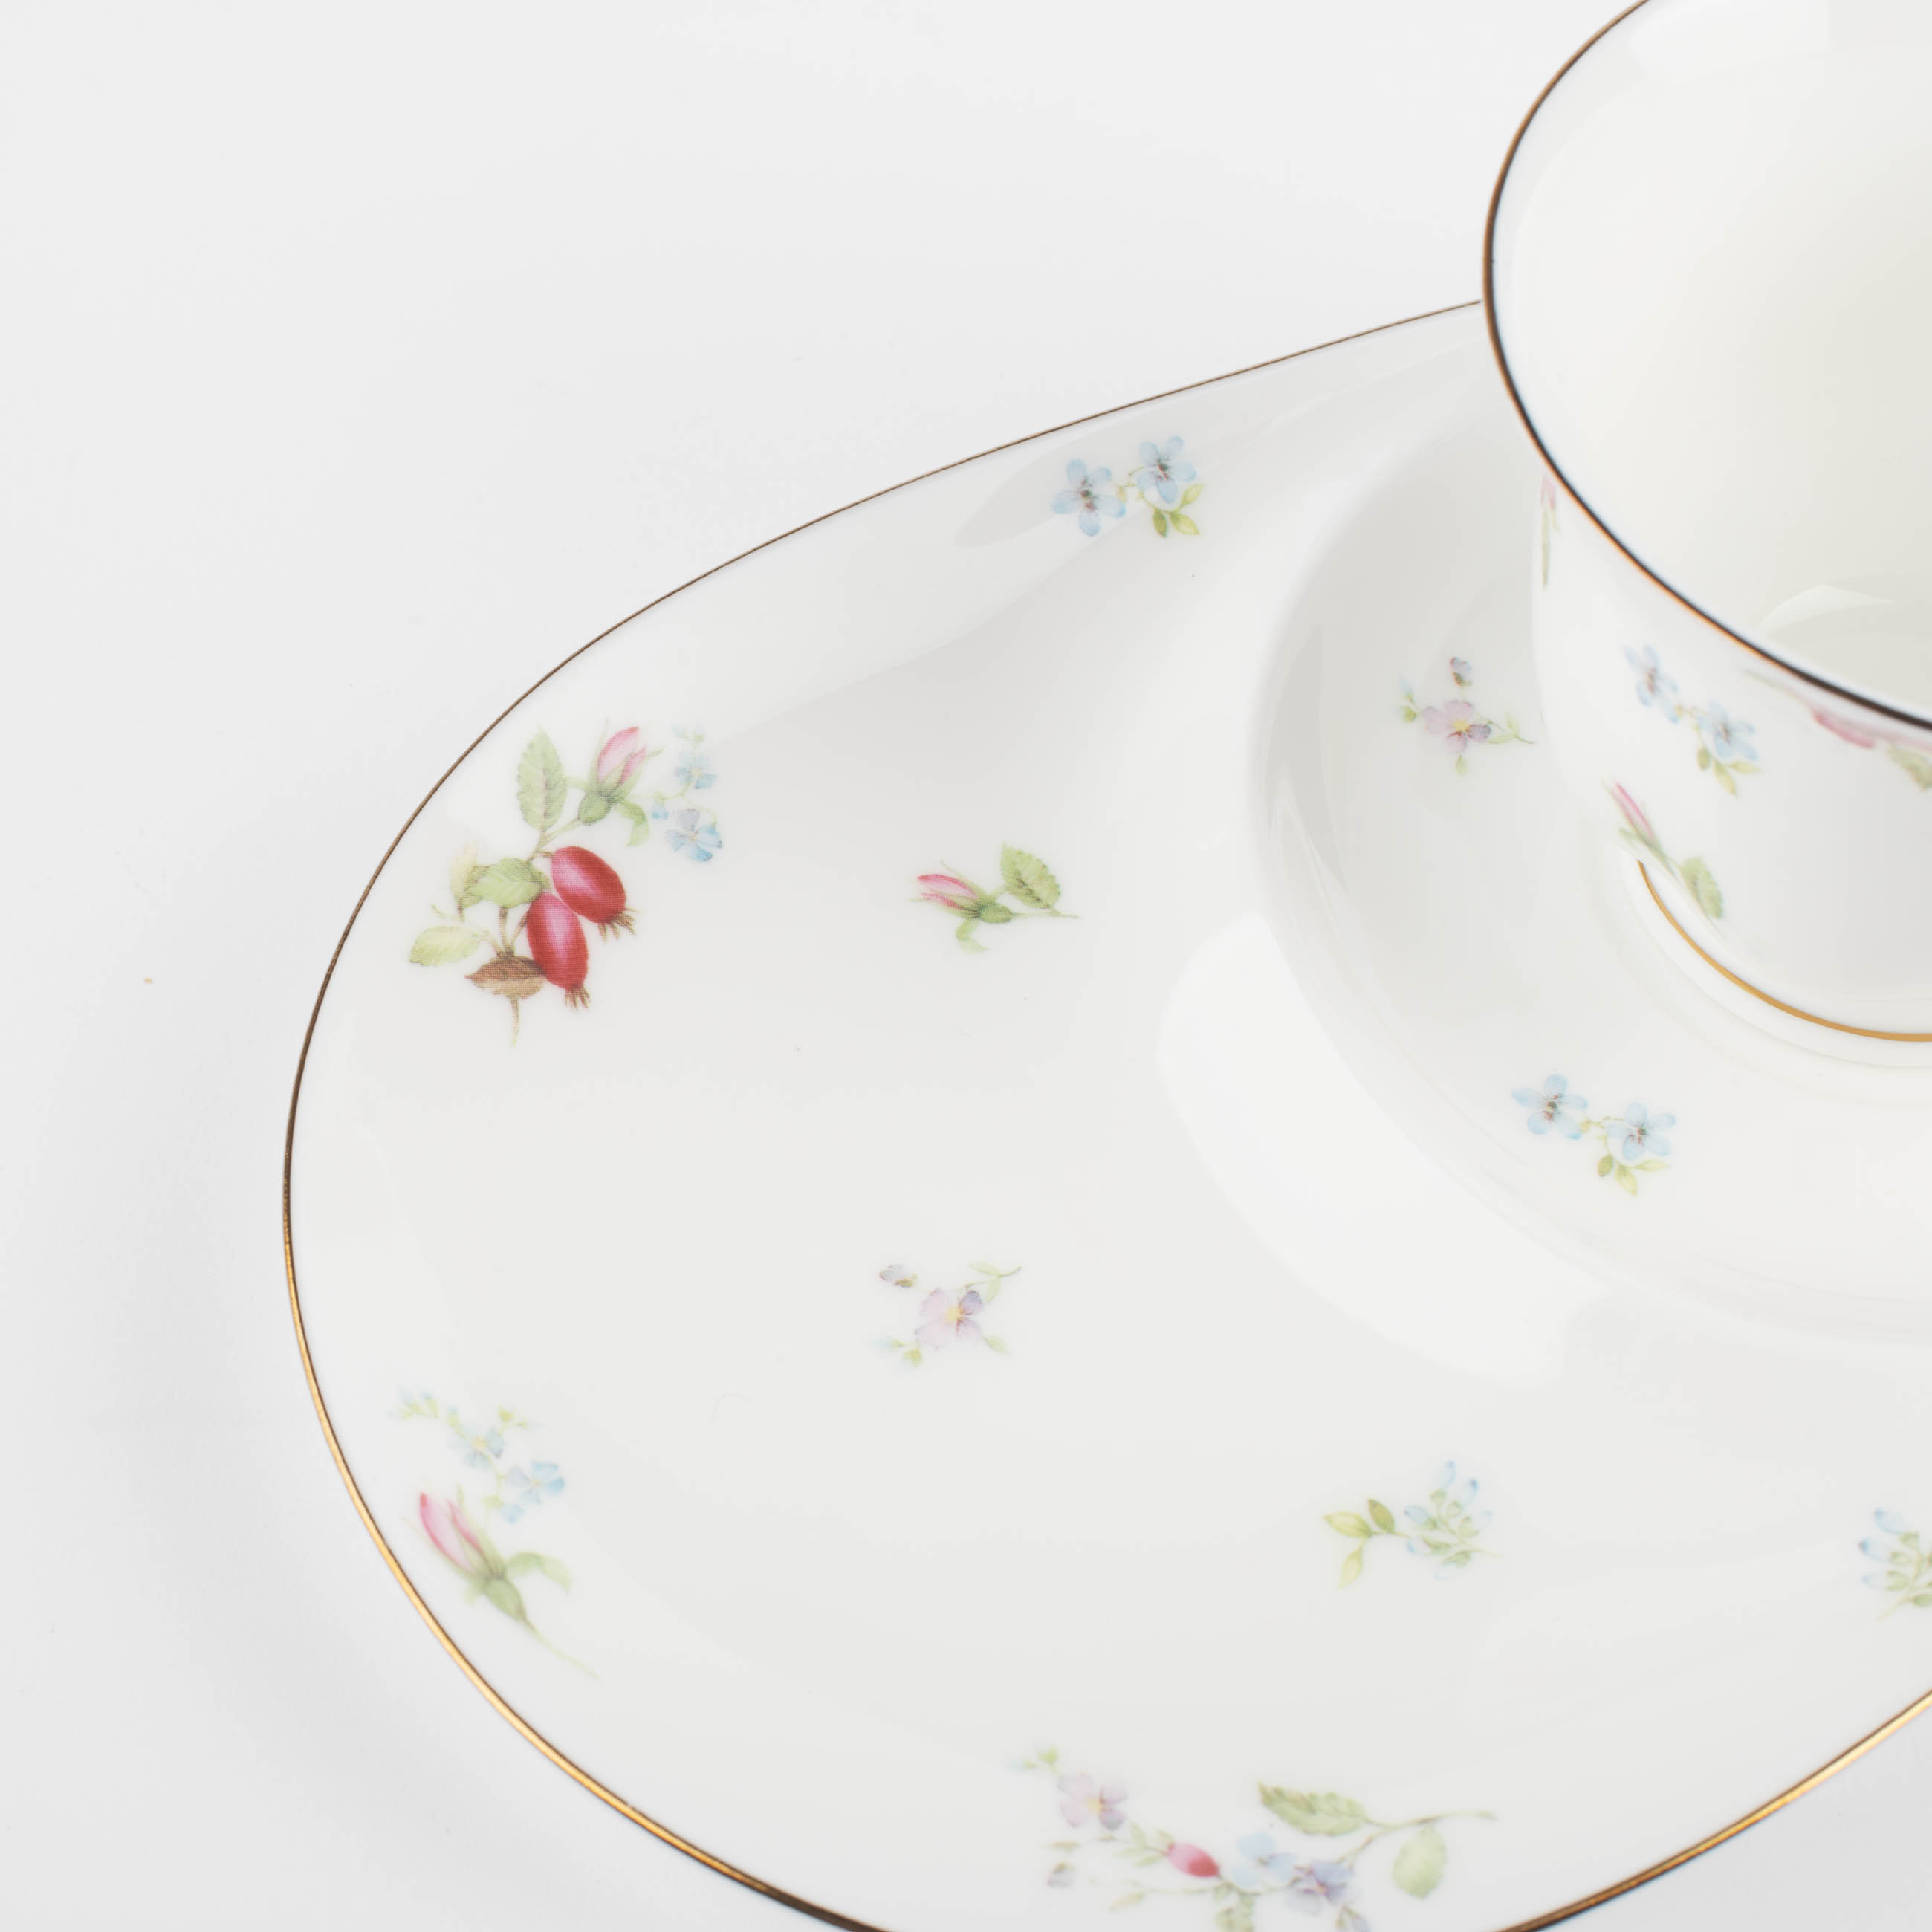 Пара чайная, 1 перс, 2 пр, 220 мл, фарфор F, белая, с золотистым кантом, Цветы, Delicate flowers изображение № 3